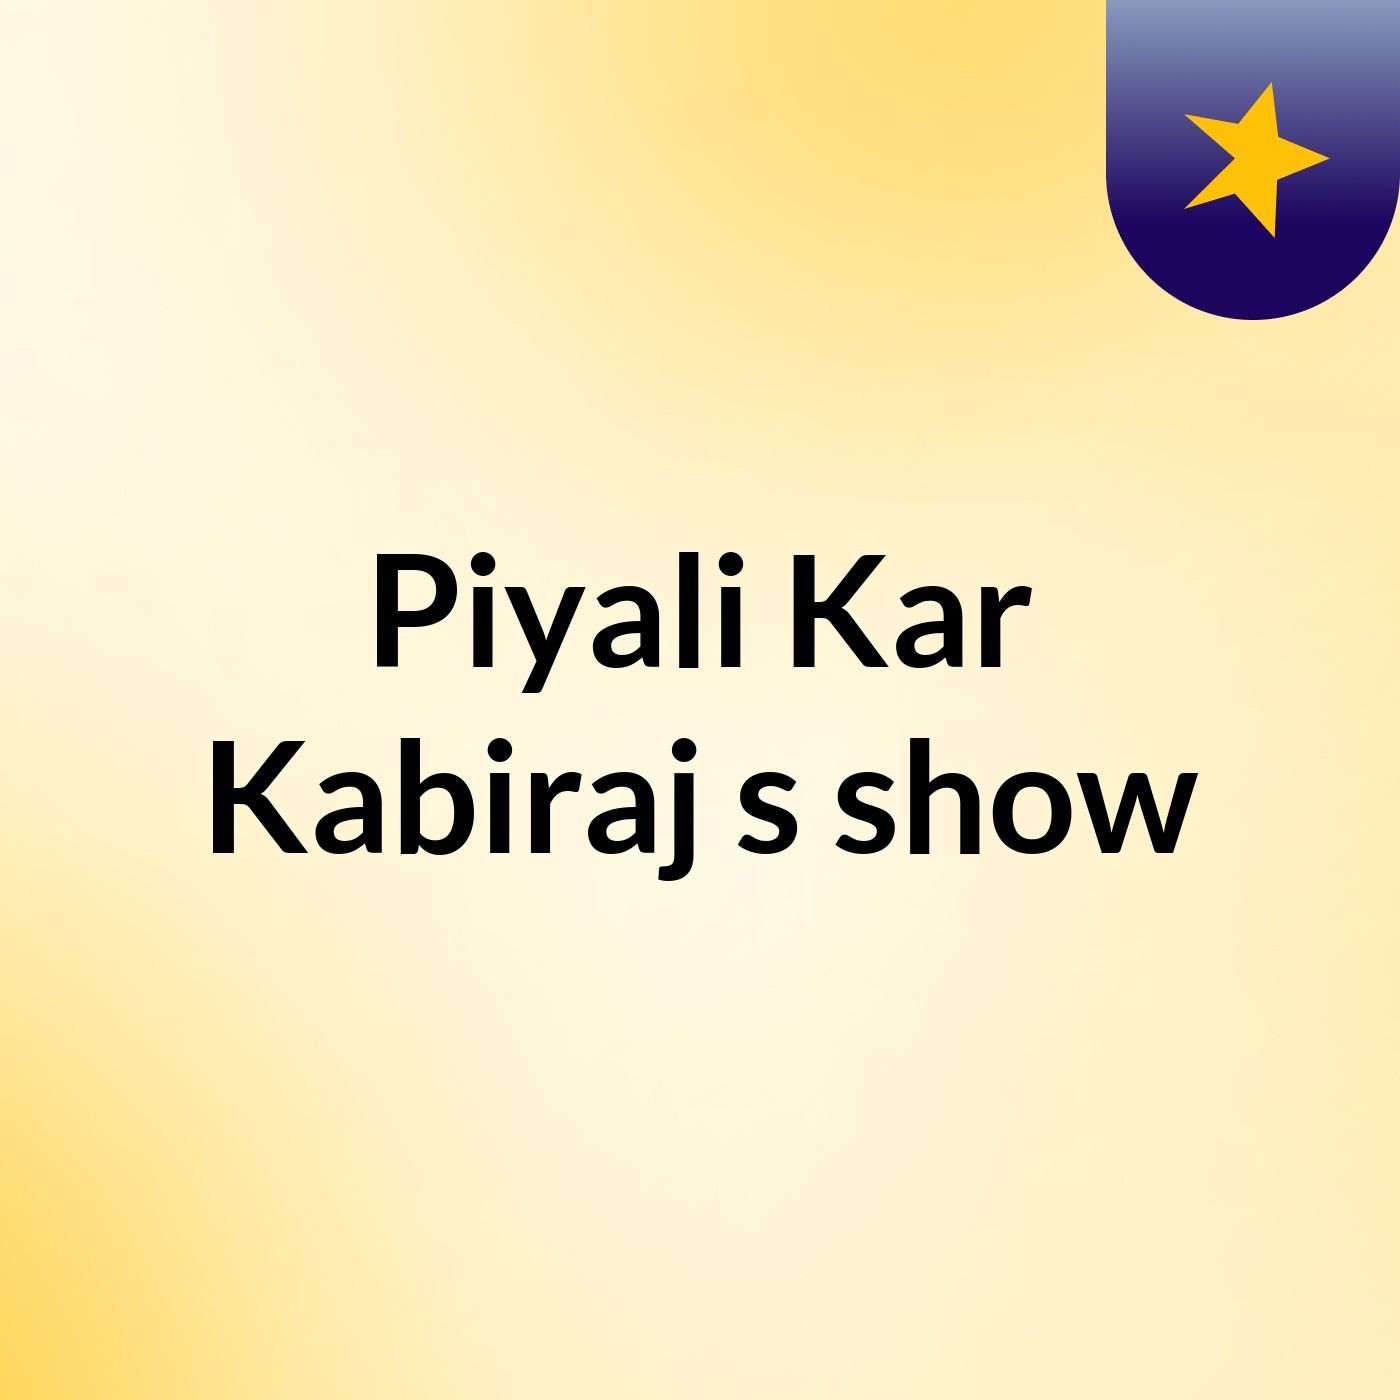 Piyali Kar Kabiraj's show